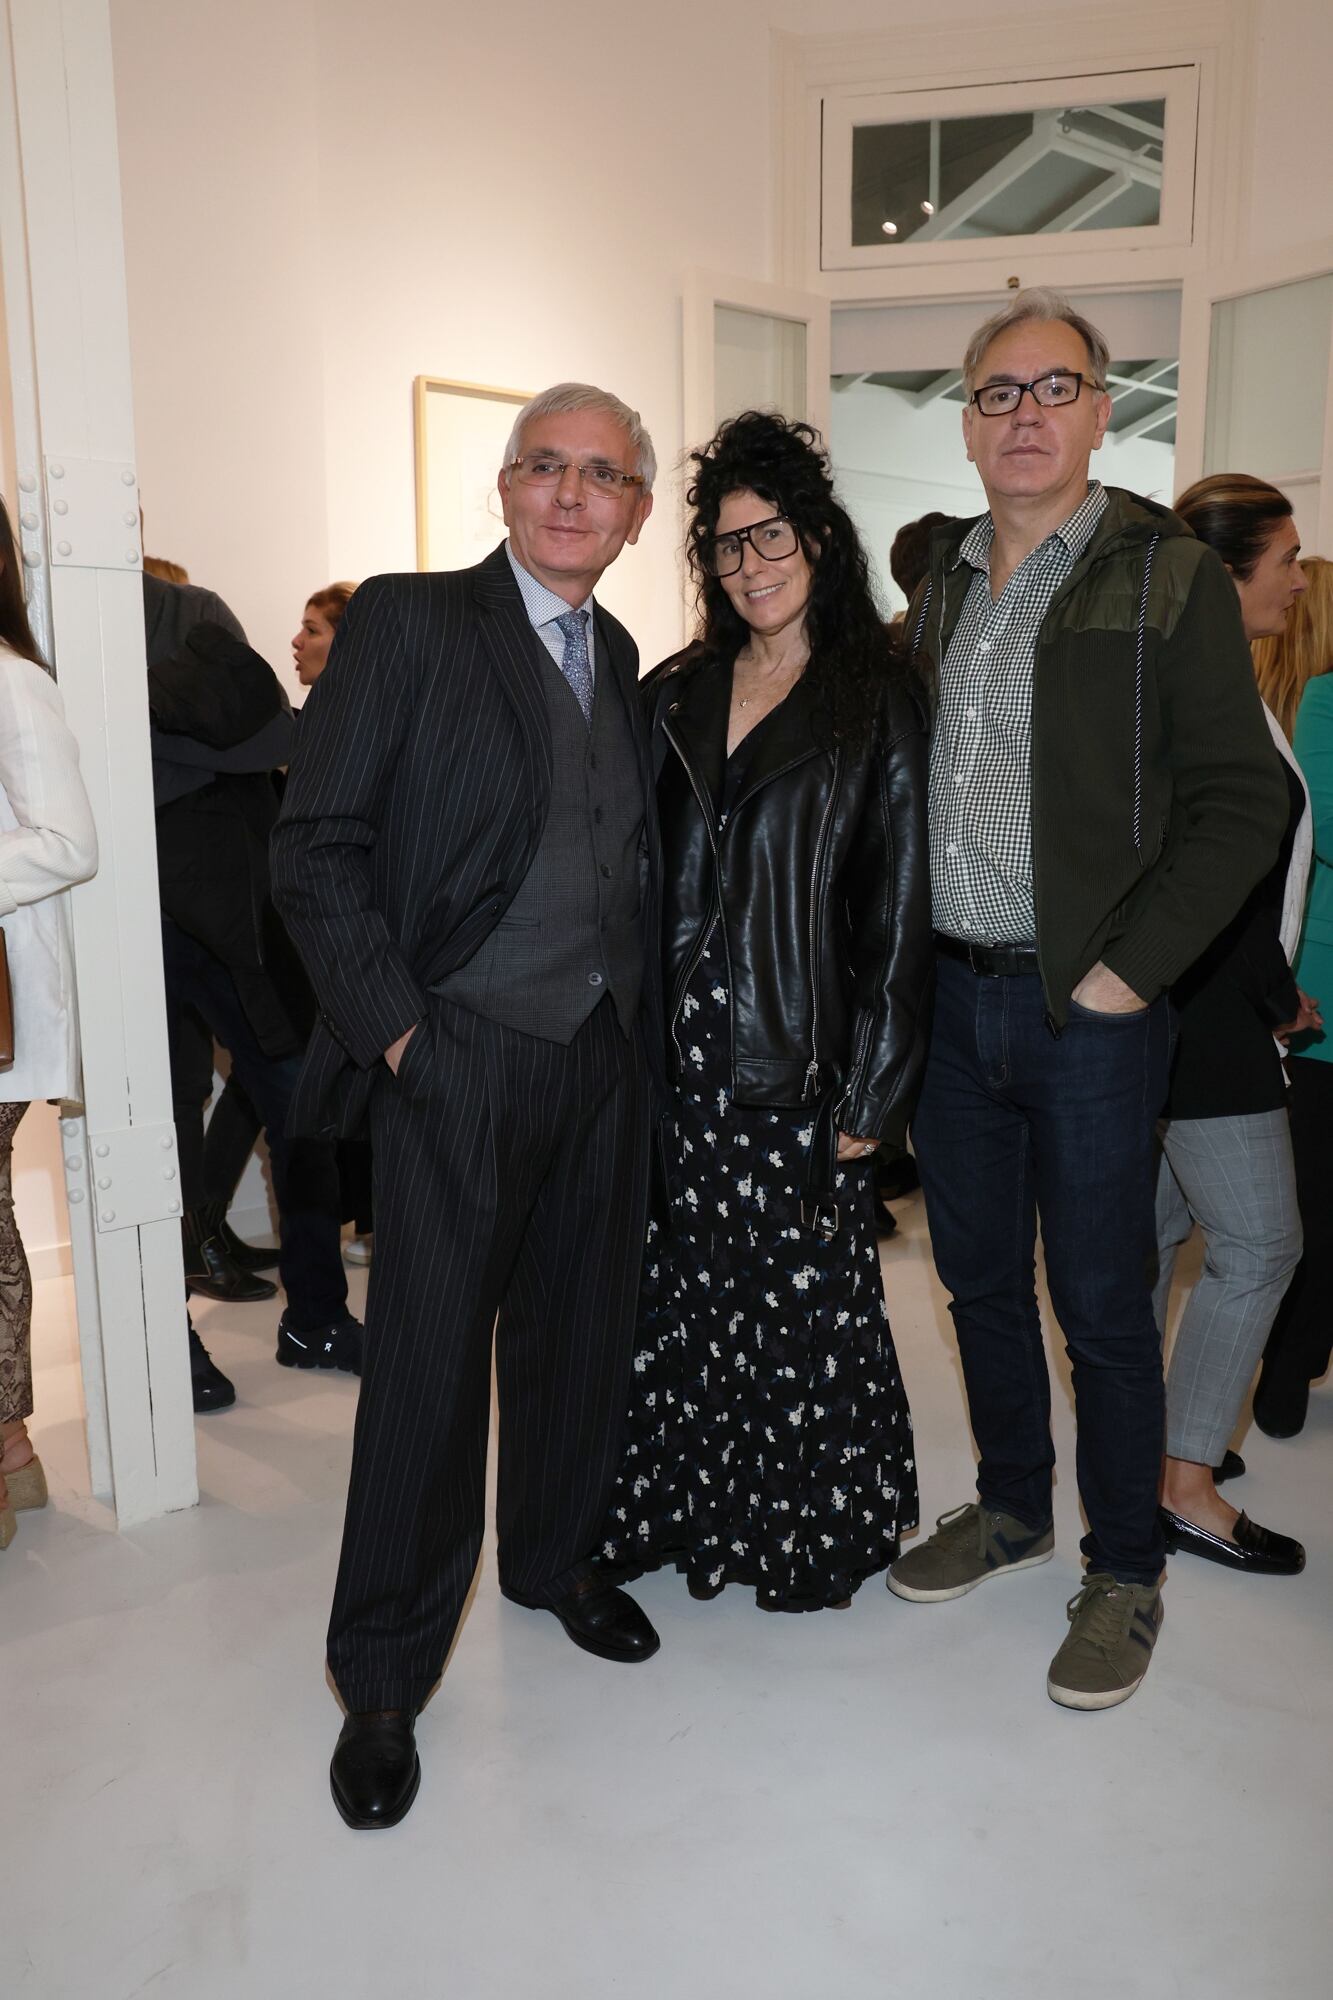 El coleccionista Esteban Tedesco, la artista Cynthia Cohen y el galerista Hernán Zavaleta